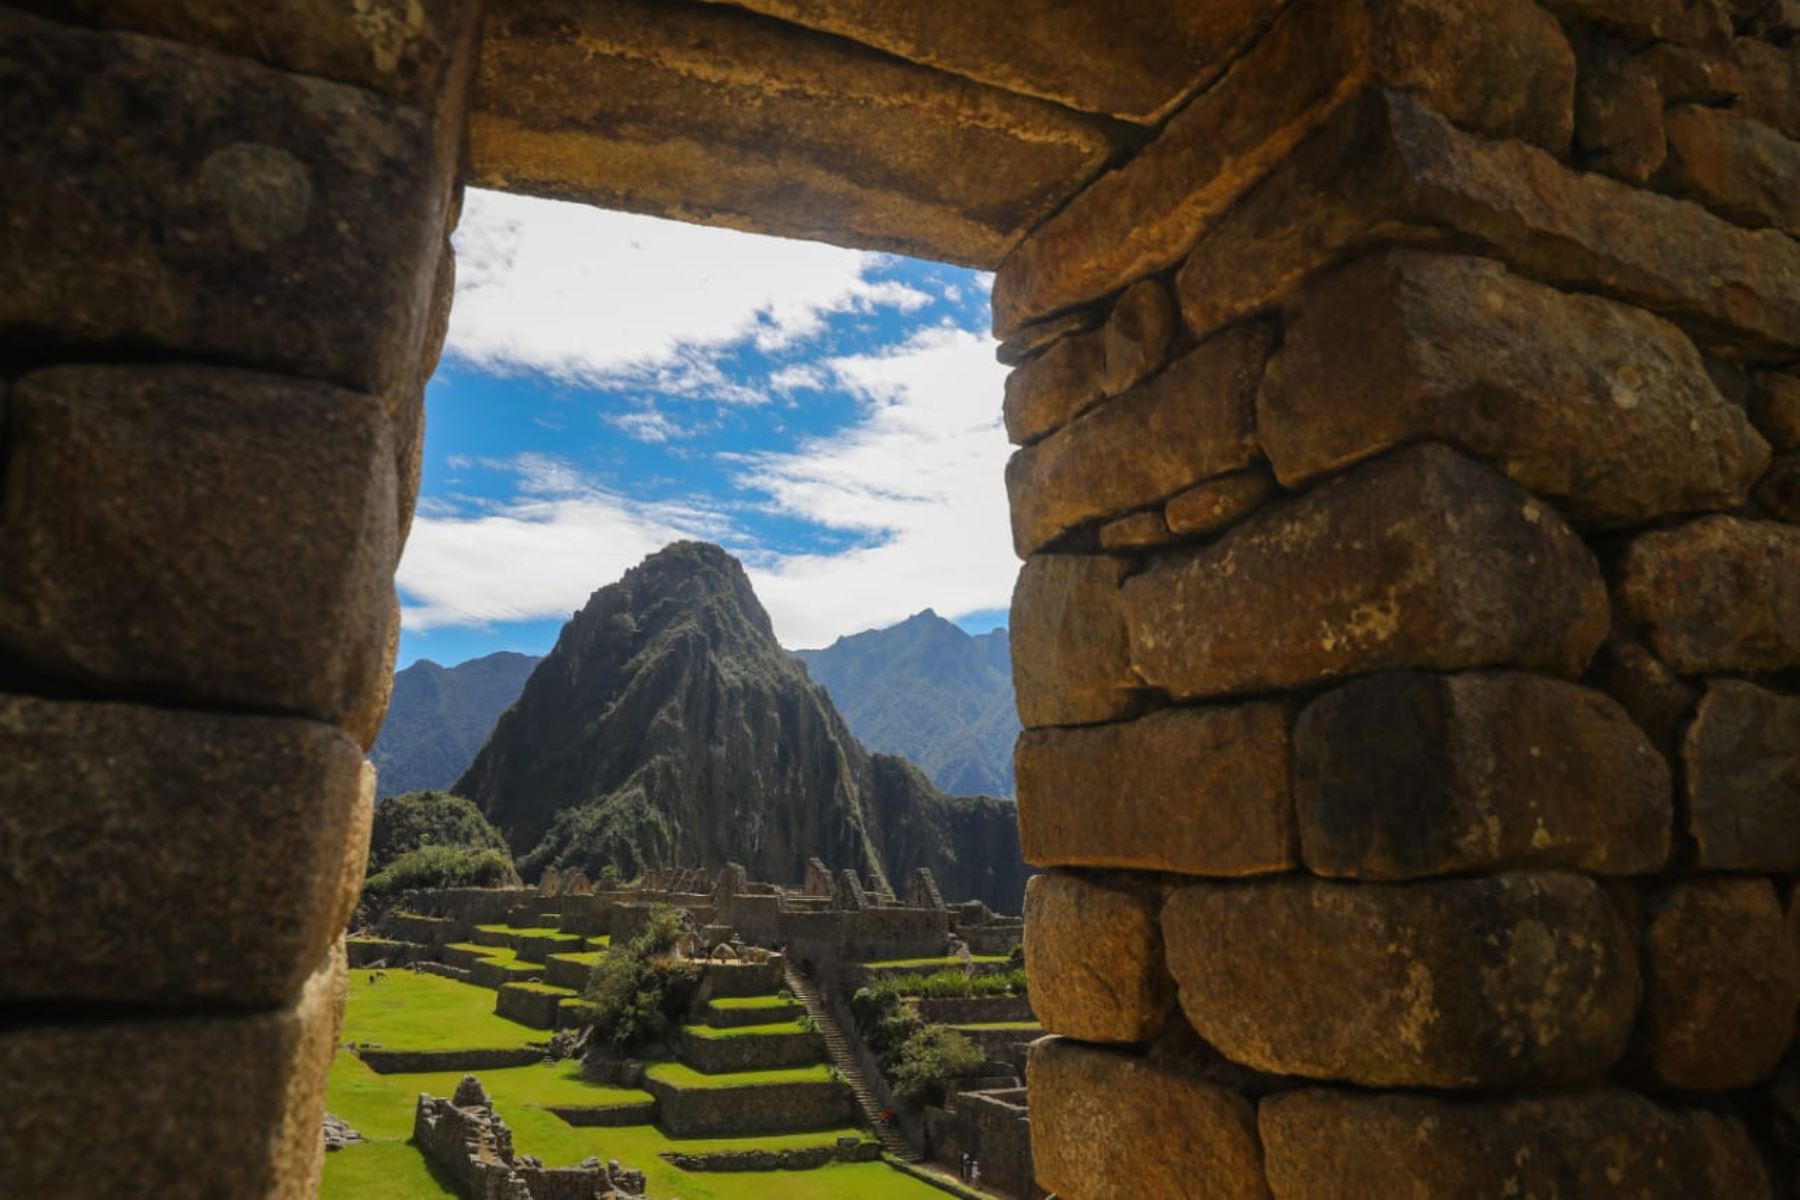 Machu Picchu tendrá dos nuevos corredores turísticos para diversificar la oferta y dinamizar la economía local, informó la municipalidad distrital. Foto: ANDINA/Prensa Presidencia